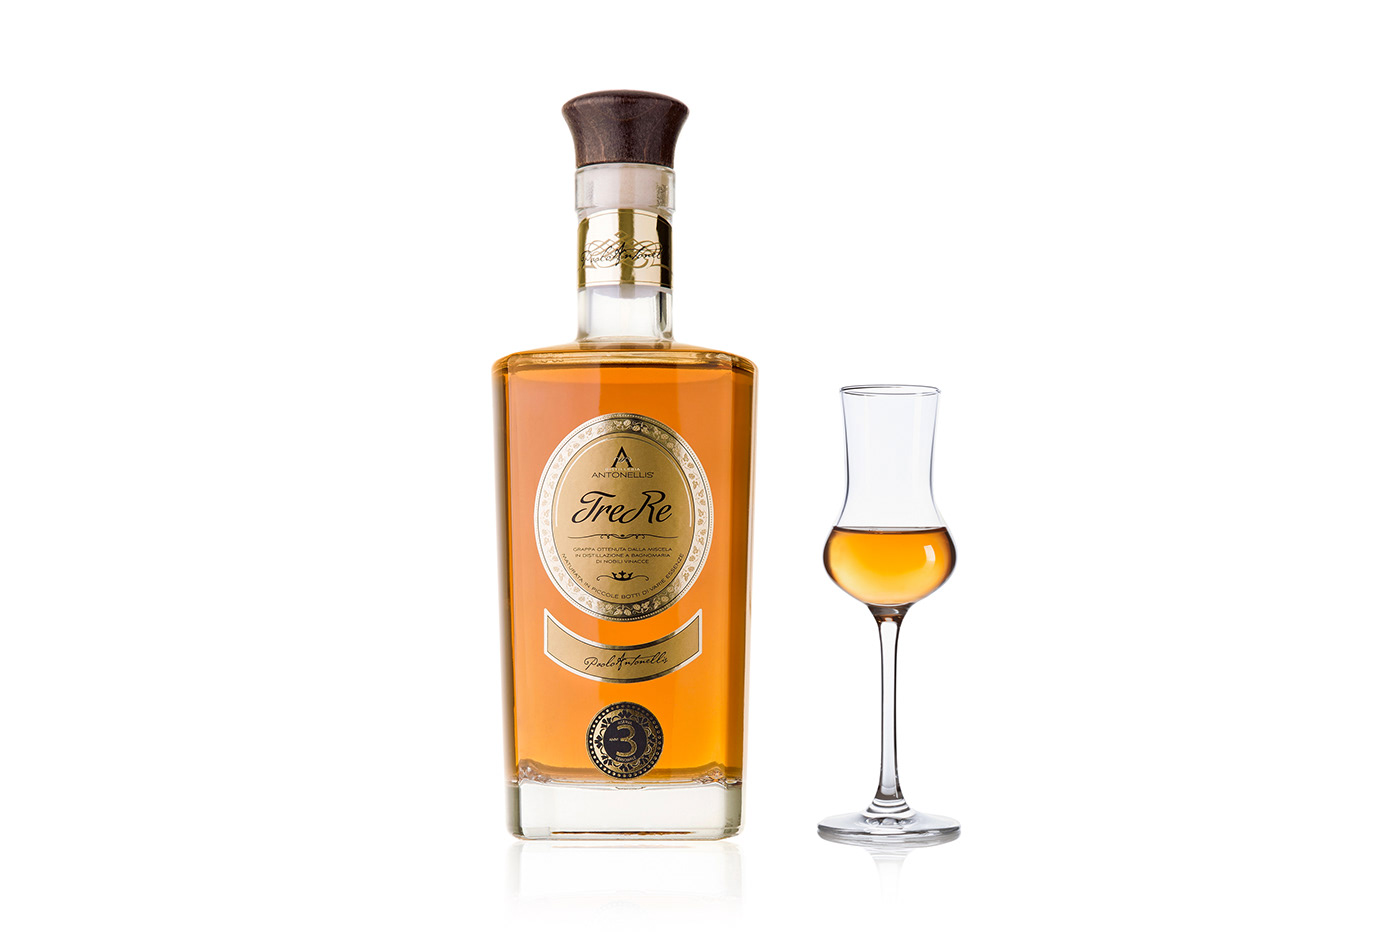 Label brand spirit distillation grappa distilleria gold oro vinacce artigianale tradizione Italy Campania andrea basile taurasi